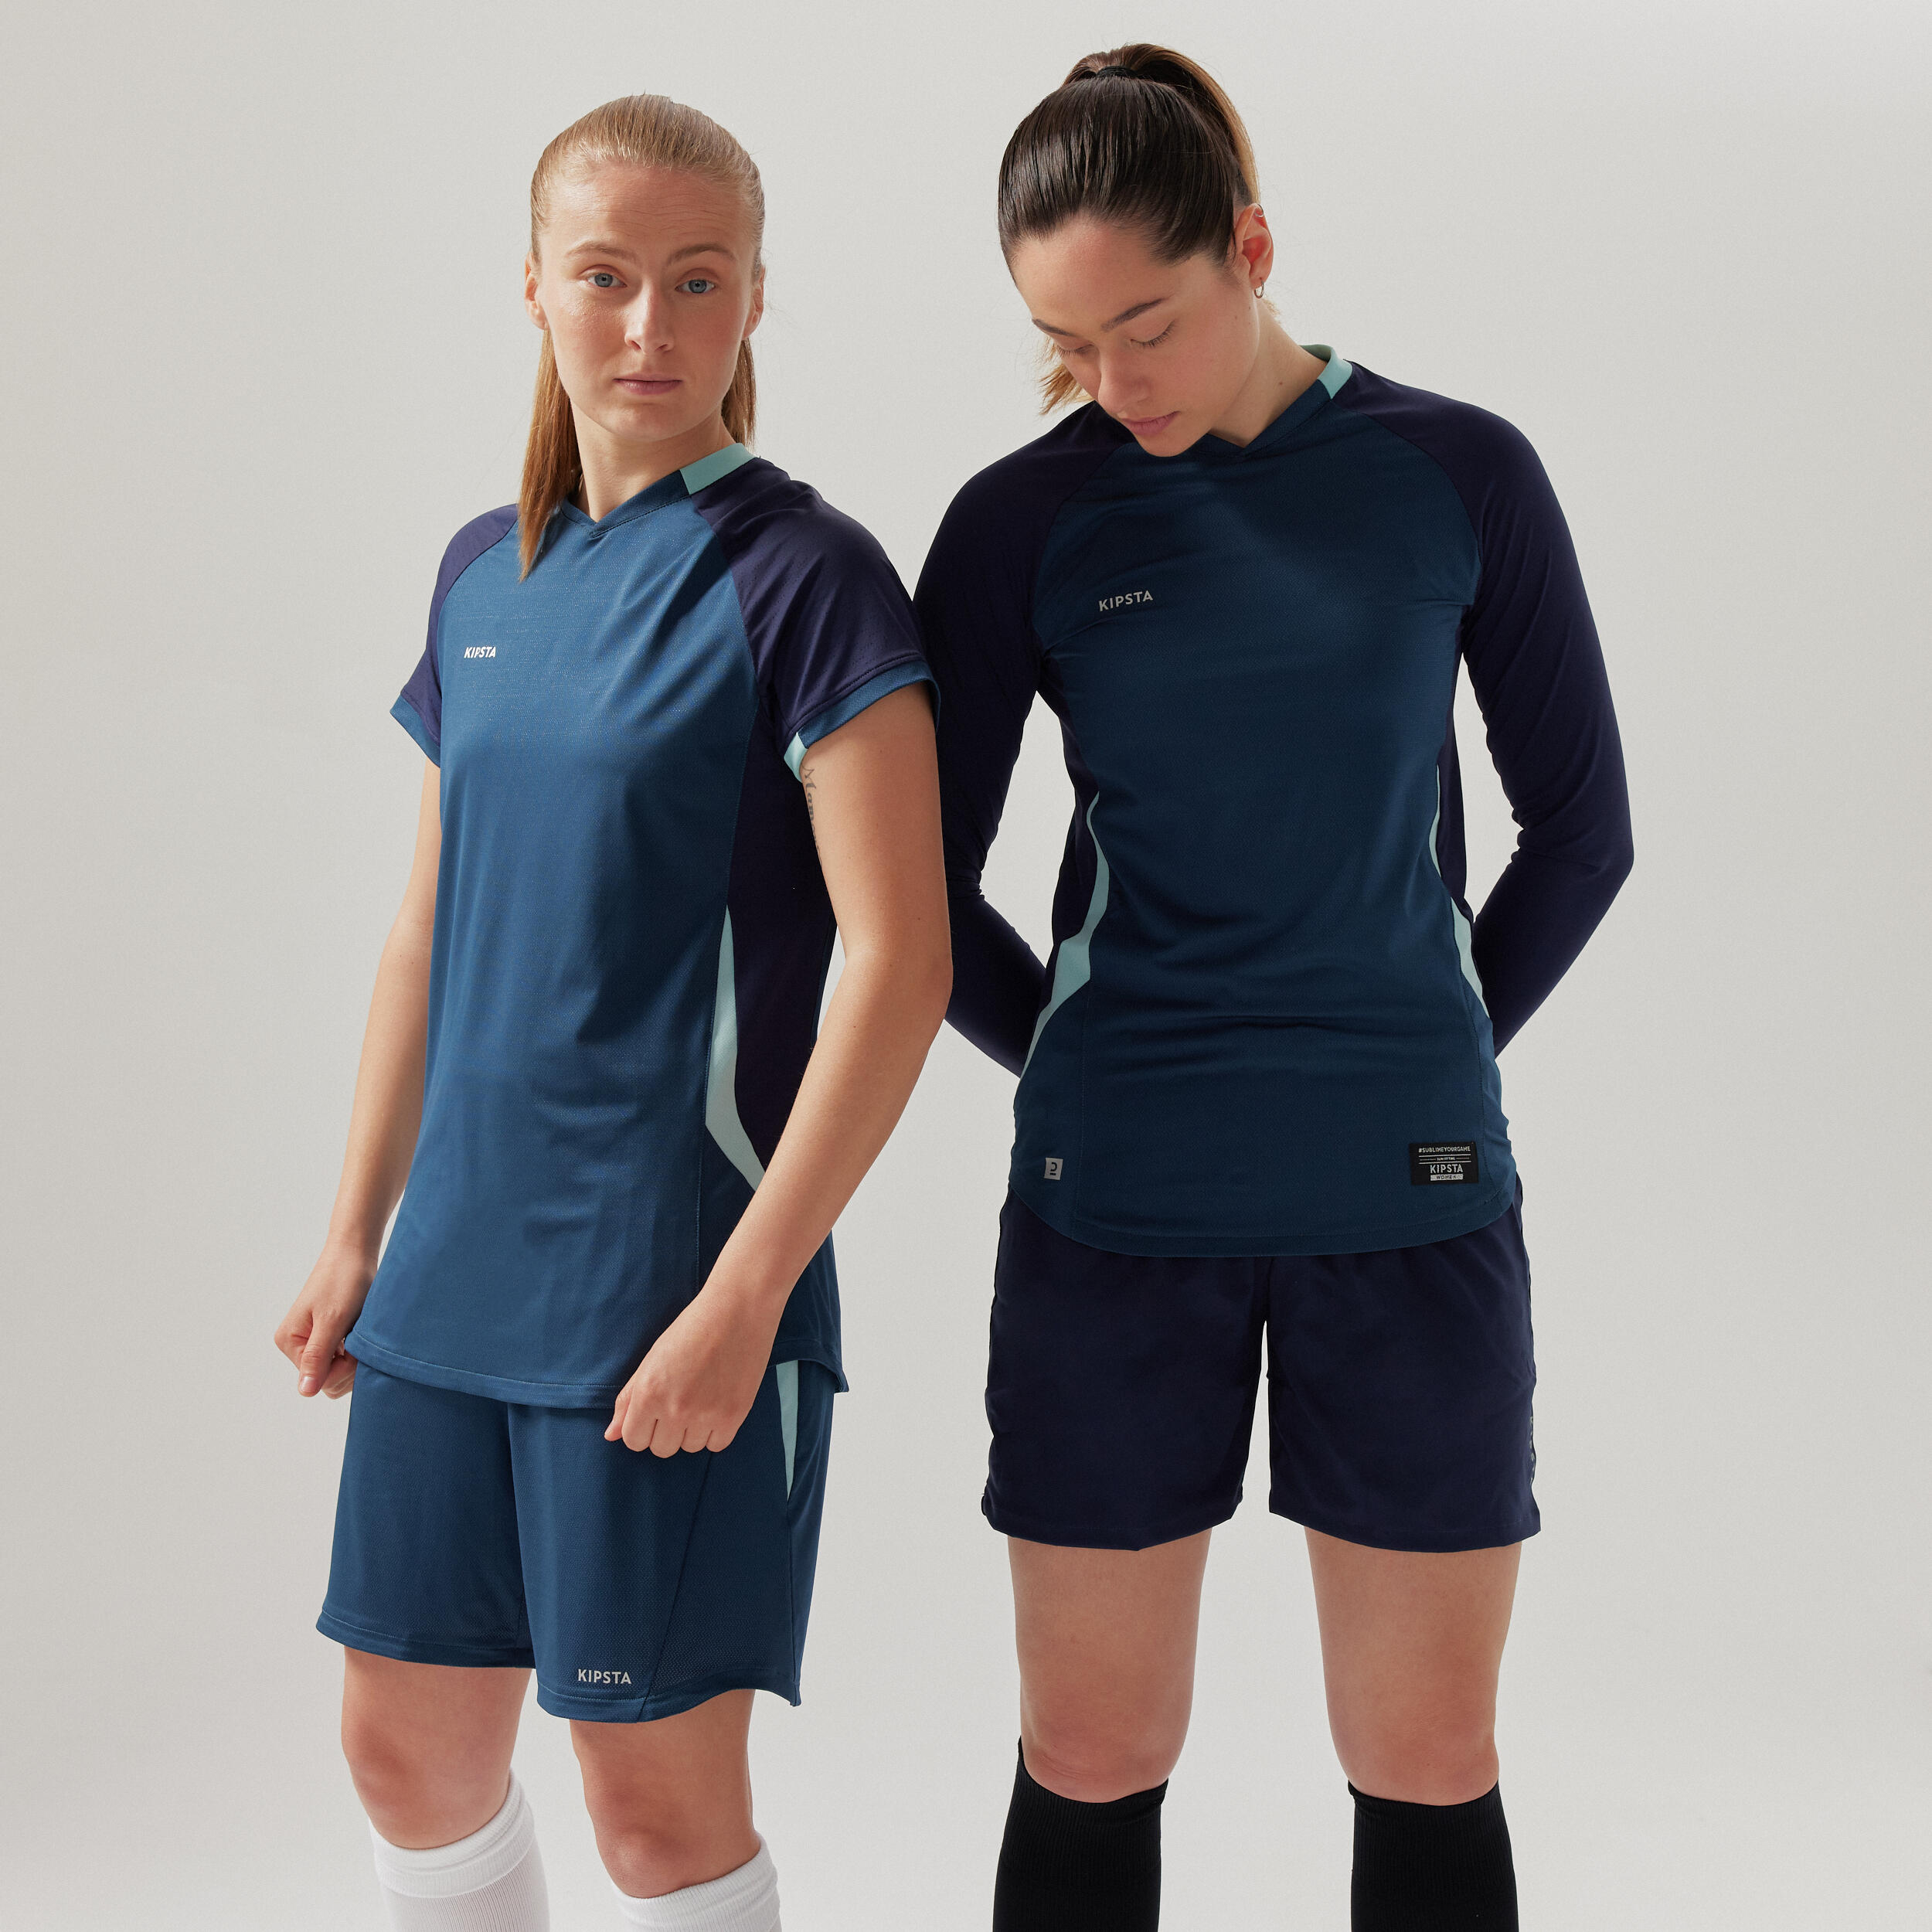 Women's Long-Sleeved Slim-Cut Football Shirt - Blue 2/8